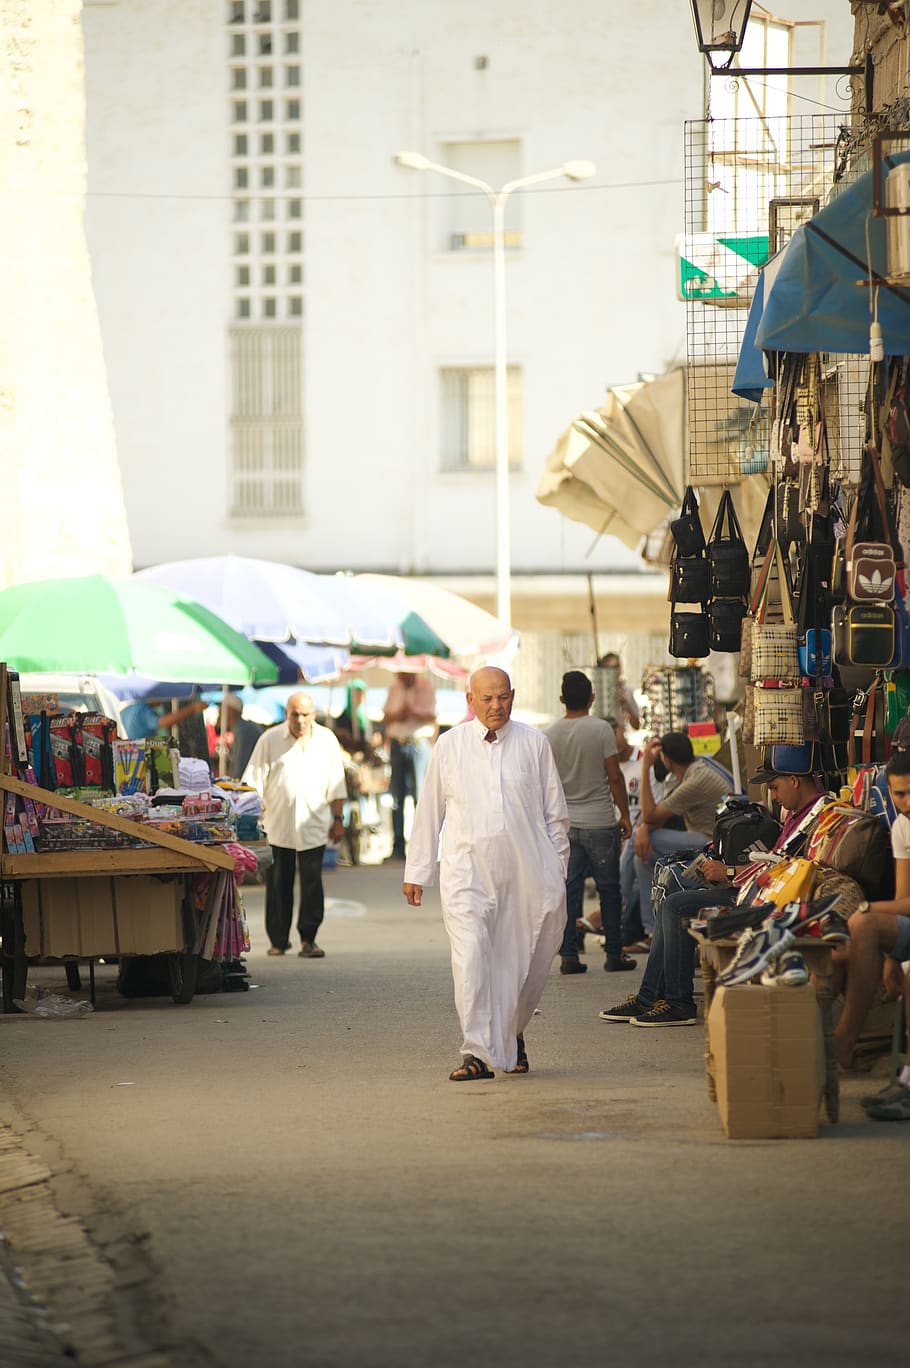 Túnez, mercado, hombre, va, musulmanes, vendedor, comprador, bolsas, mercancías, tiendas de campaña